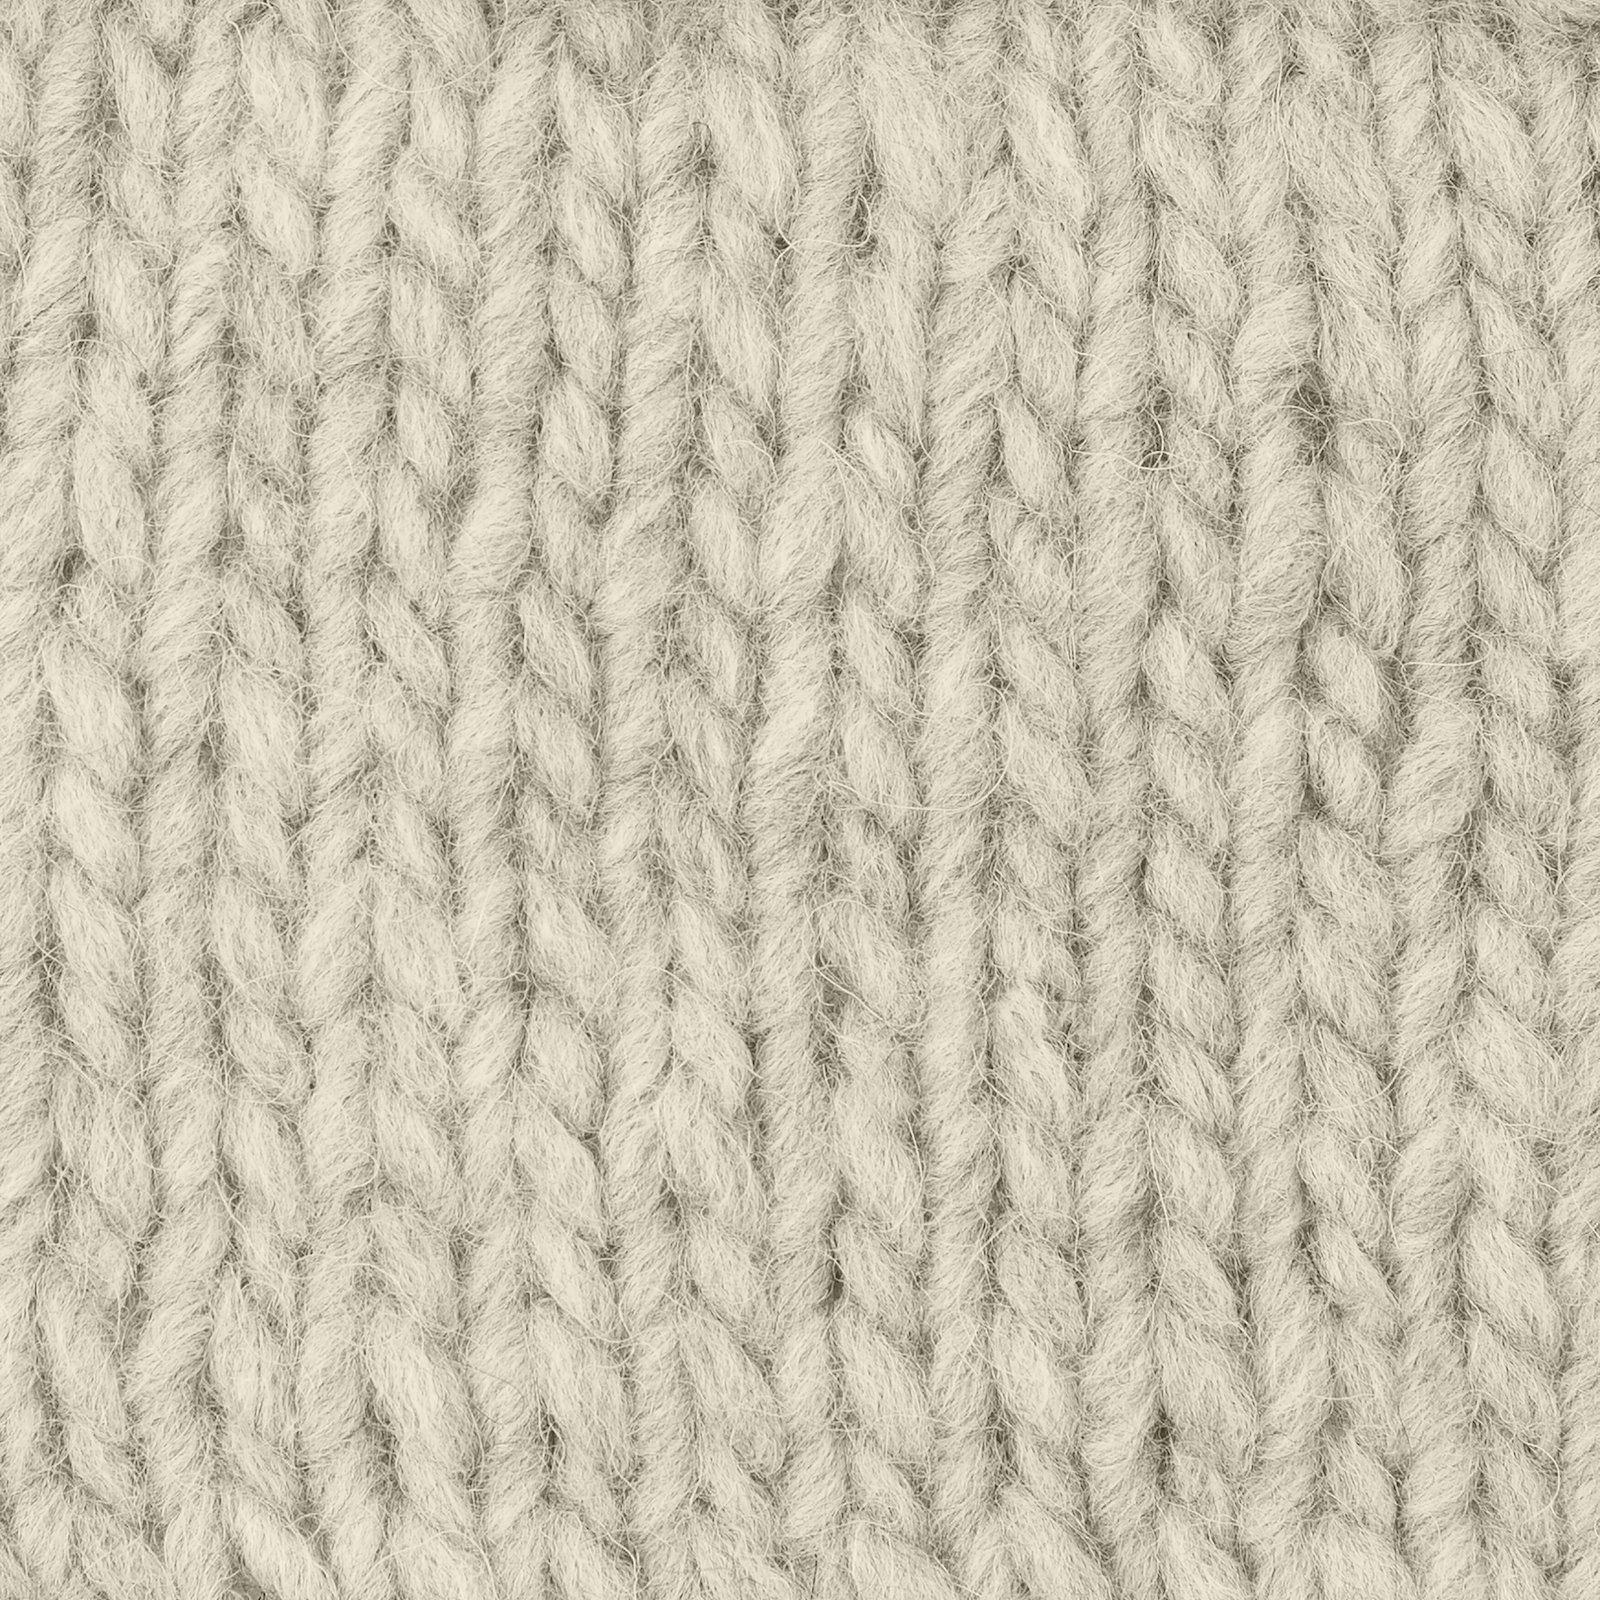 FRAYA, mixed yarn "Comfy", sand 90000945_sskit